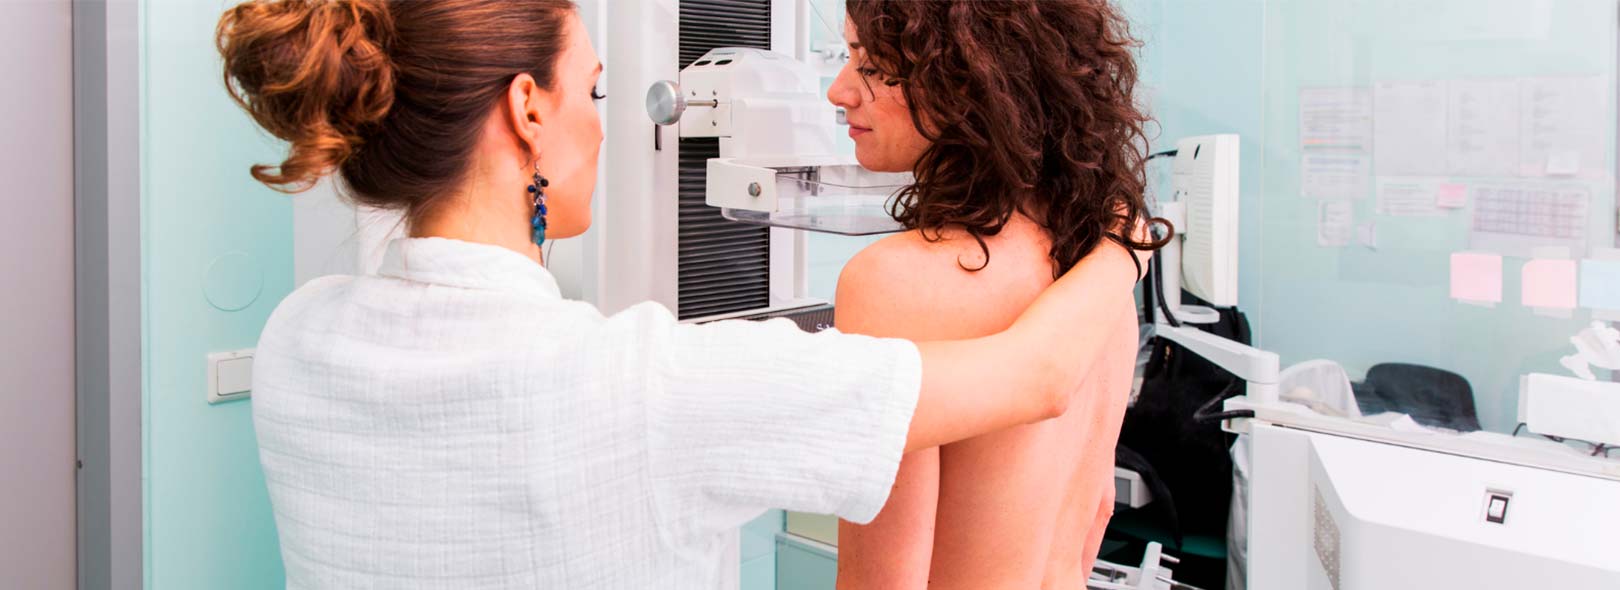 spx clinica spx imagem outubro rosa a importancia da campanha cancer de mama prevencao saude mamografia digital